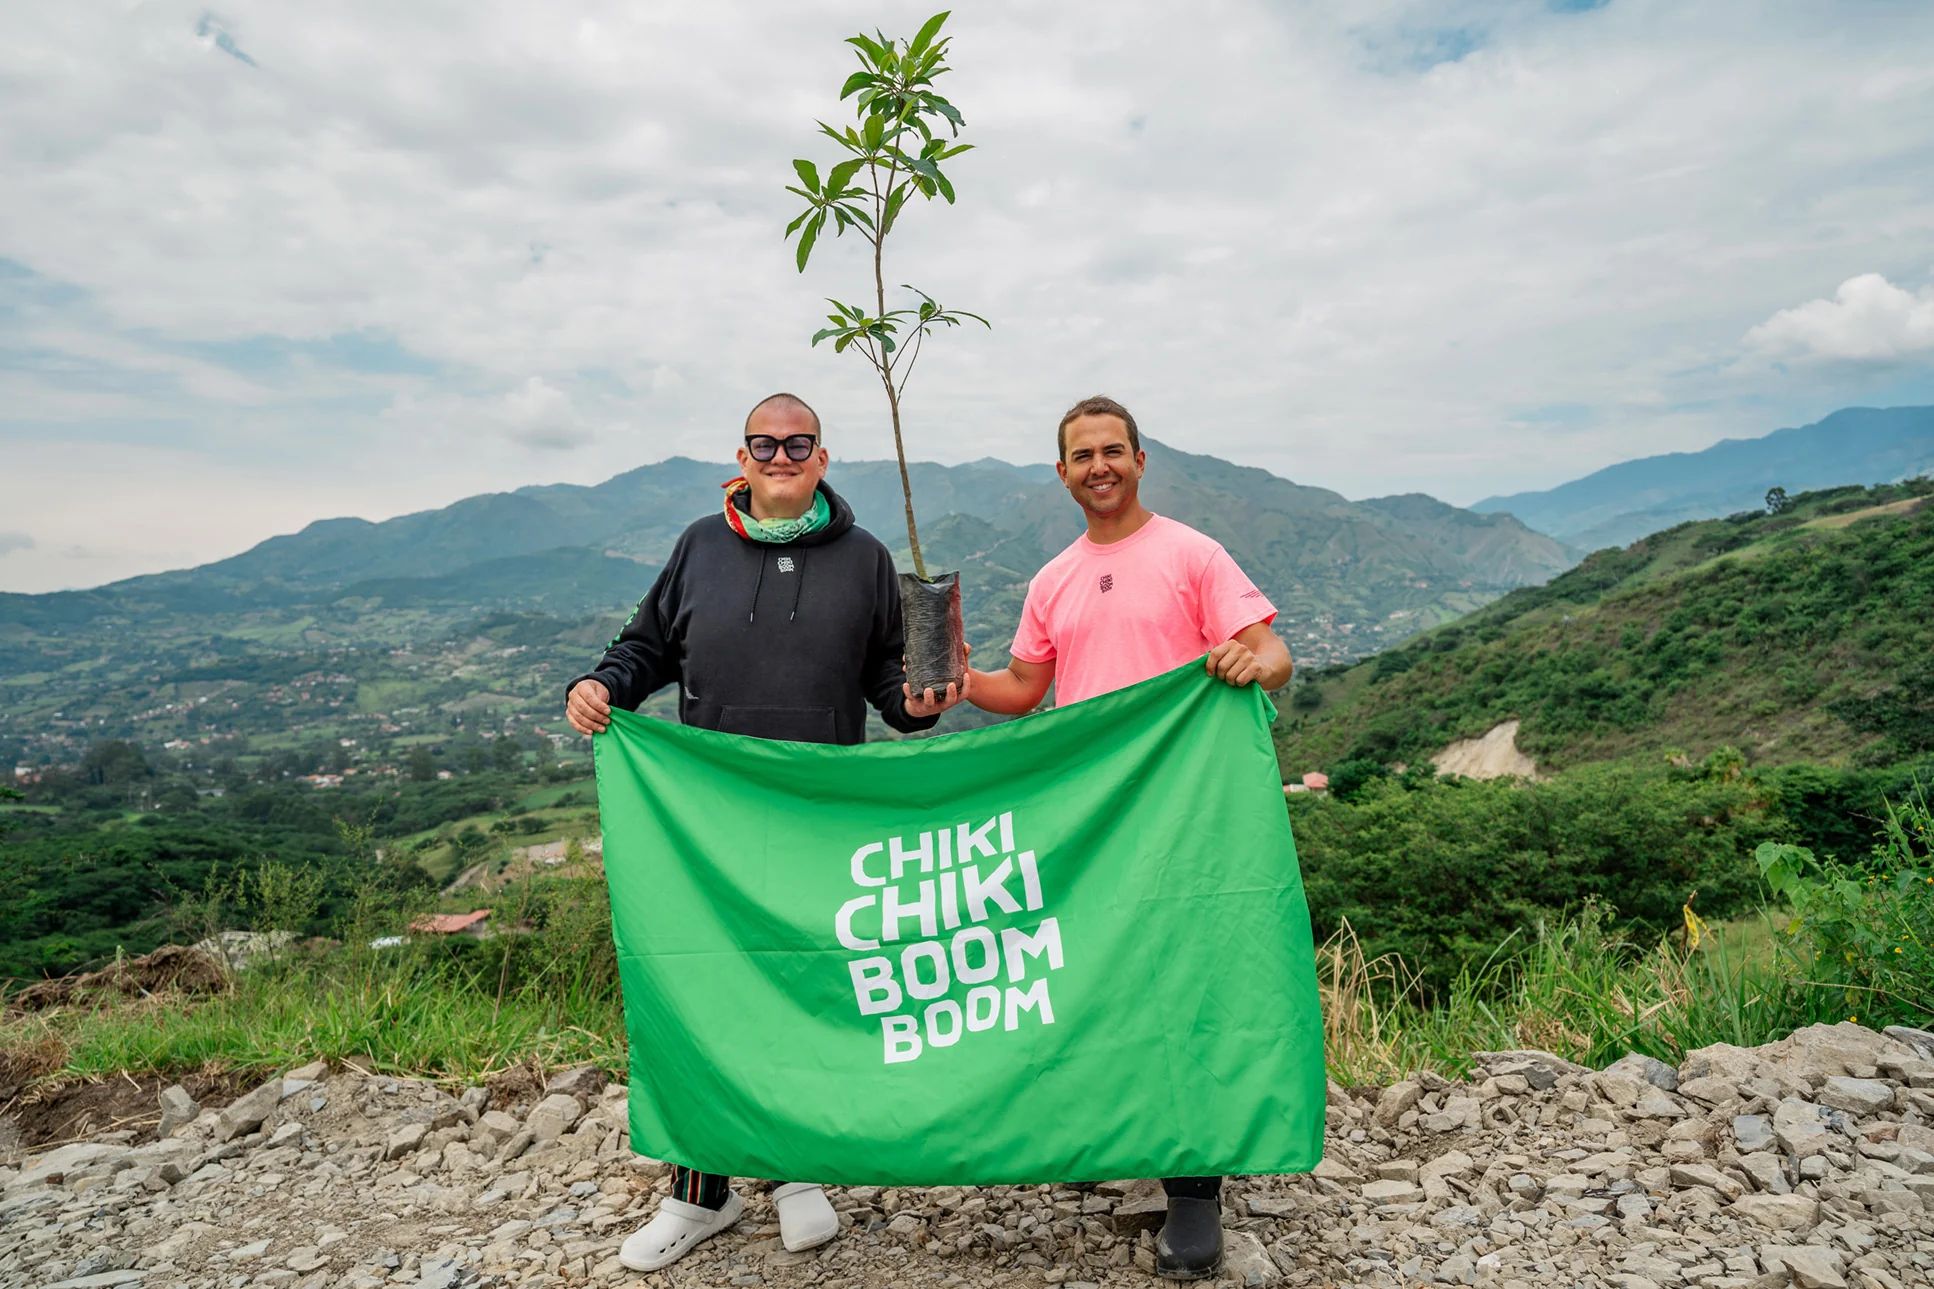 Założyciele Chiki Chiki Boom Boom trzymający znak i małe drzewo na szczycie góry